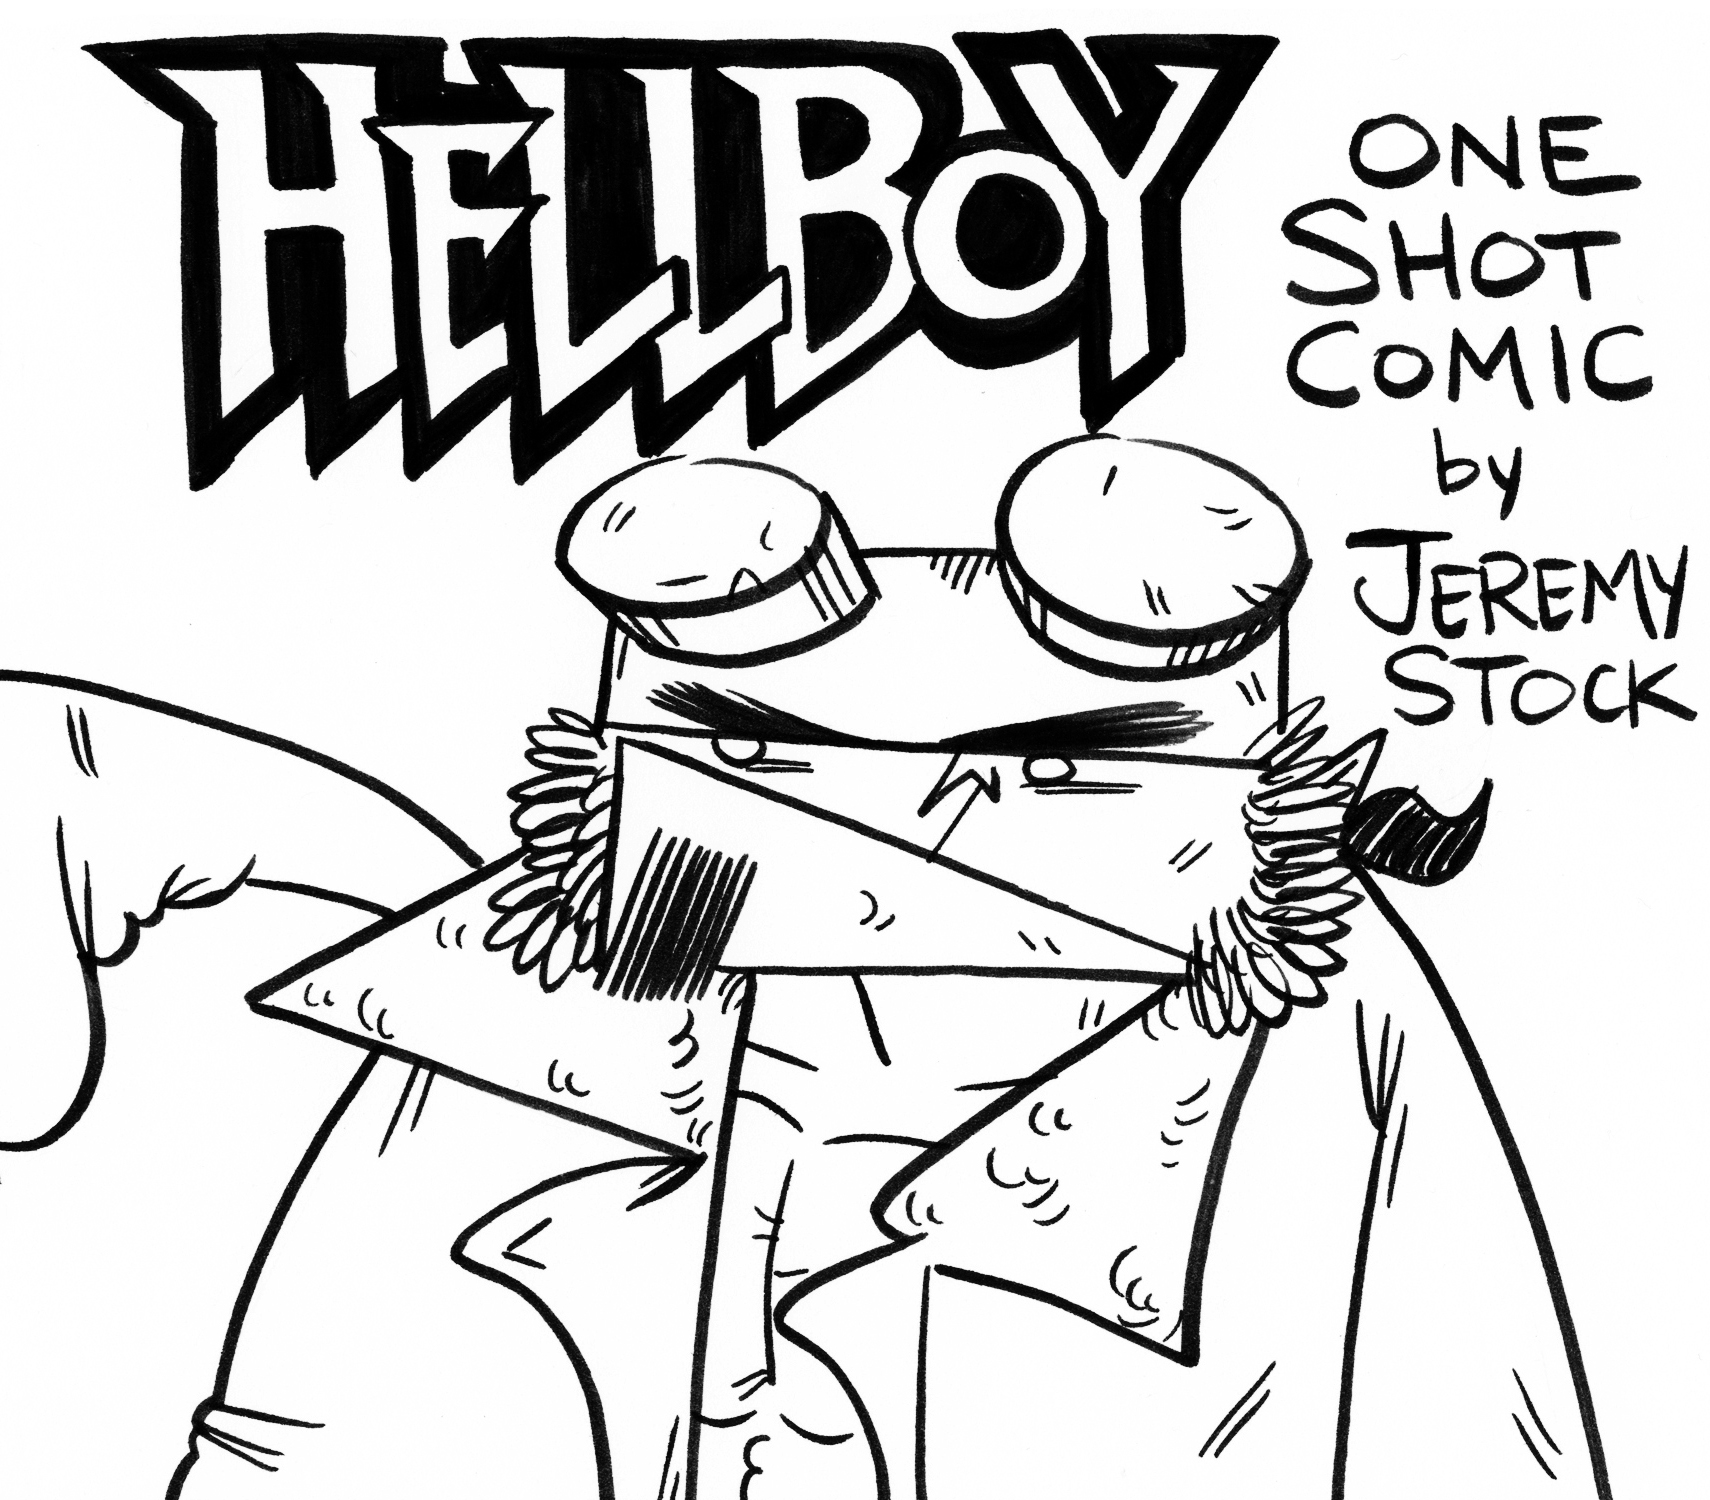 Hellboy One Shot 1.jpg